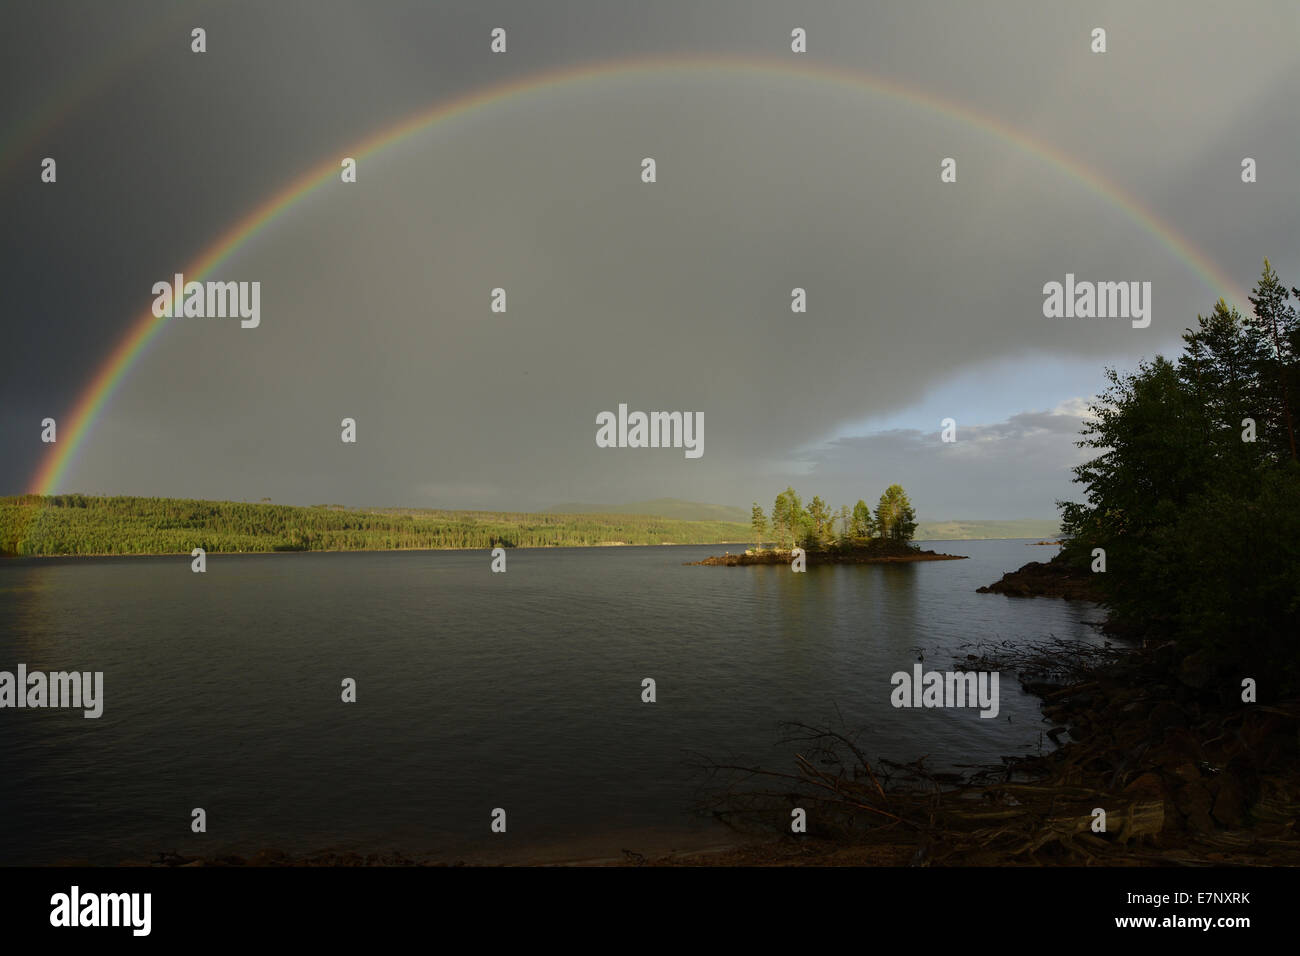 Lake, forest, ile, rainbow, Höljessjön, Längflon, Värmland Län, Sweden, Europe, Stock Photo